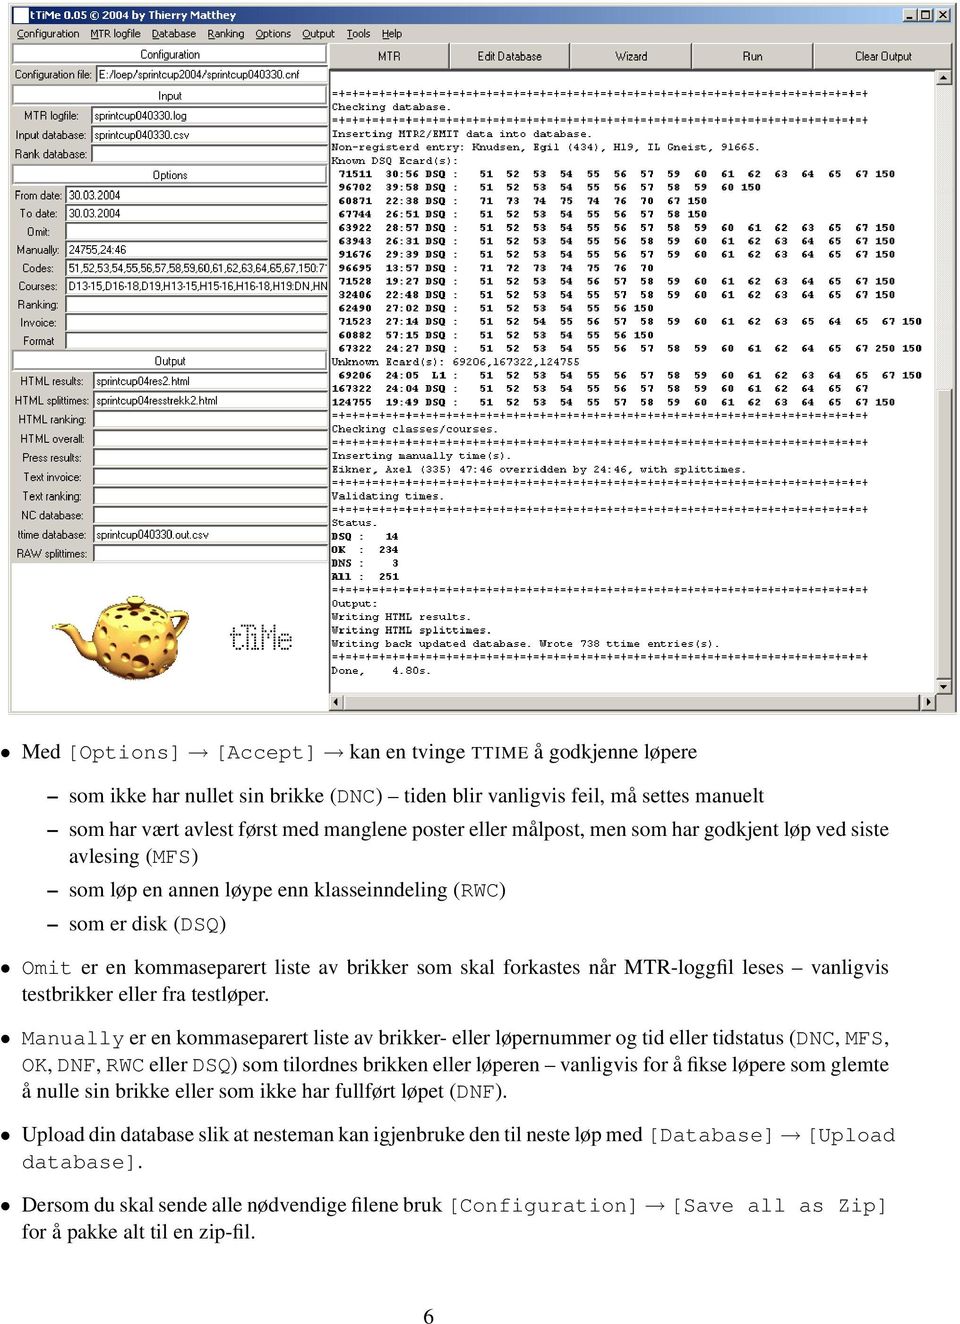 MTR-loggfil leses vanligvis testbrikker eller fra testløper.